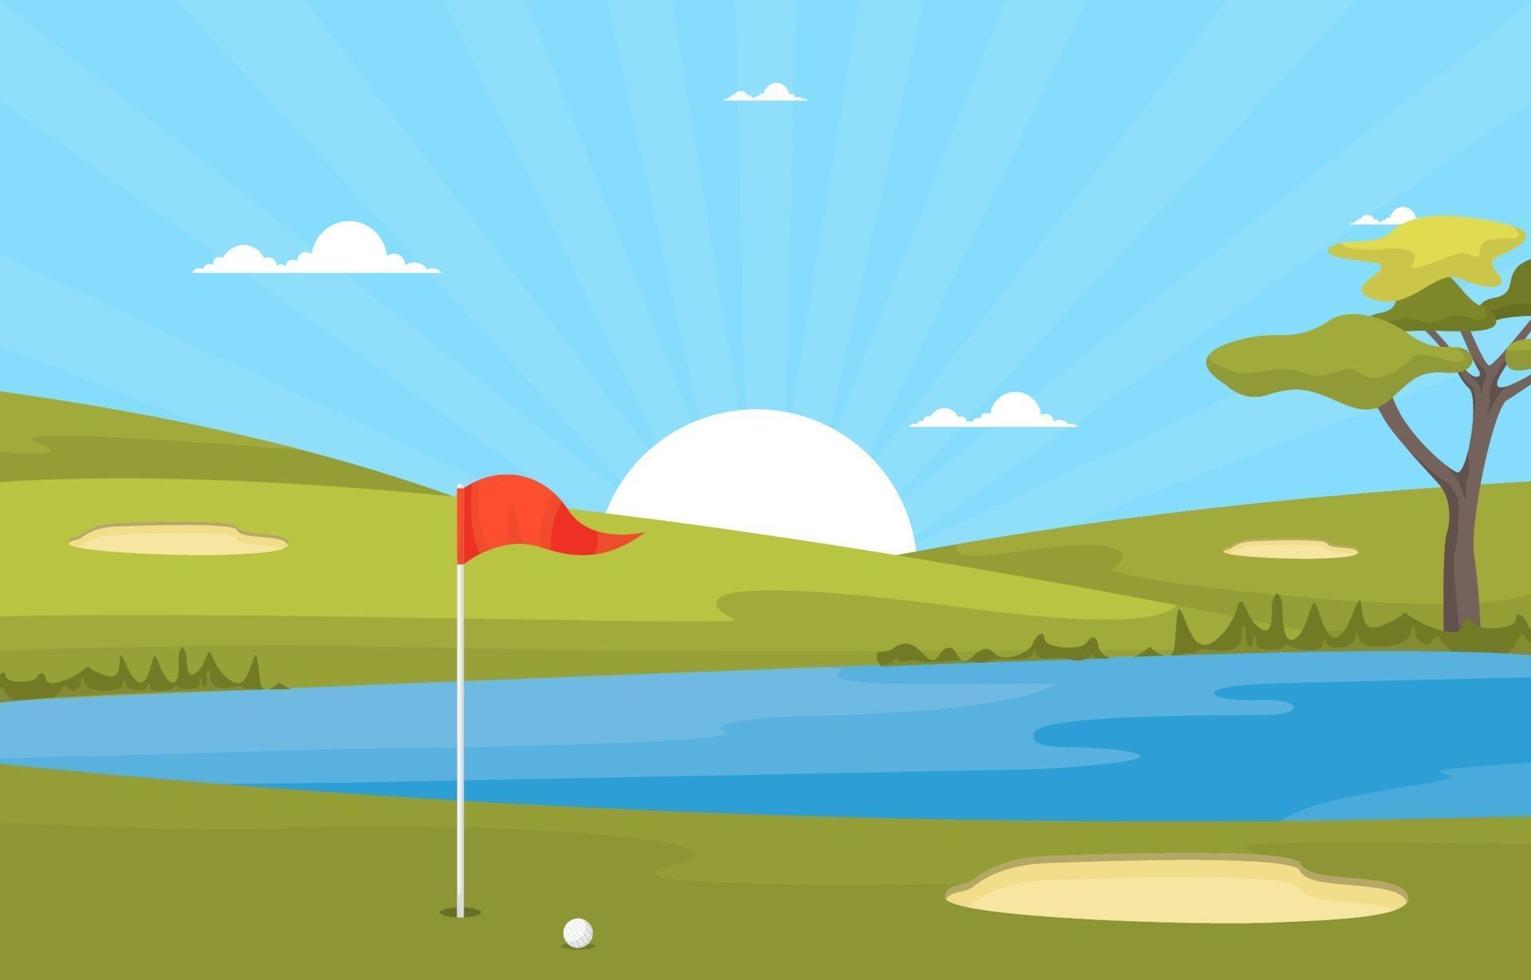 golfbaan met rode vlag, vijver en bomen vector